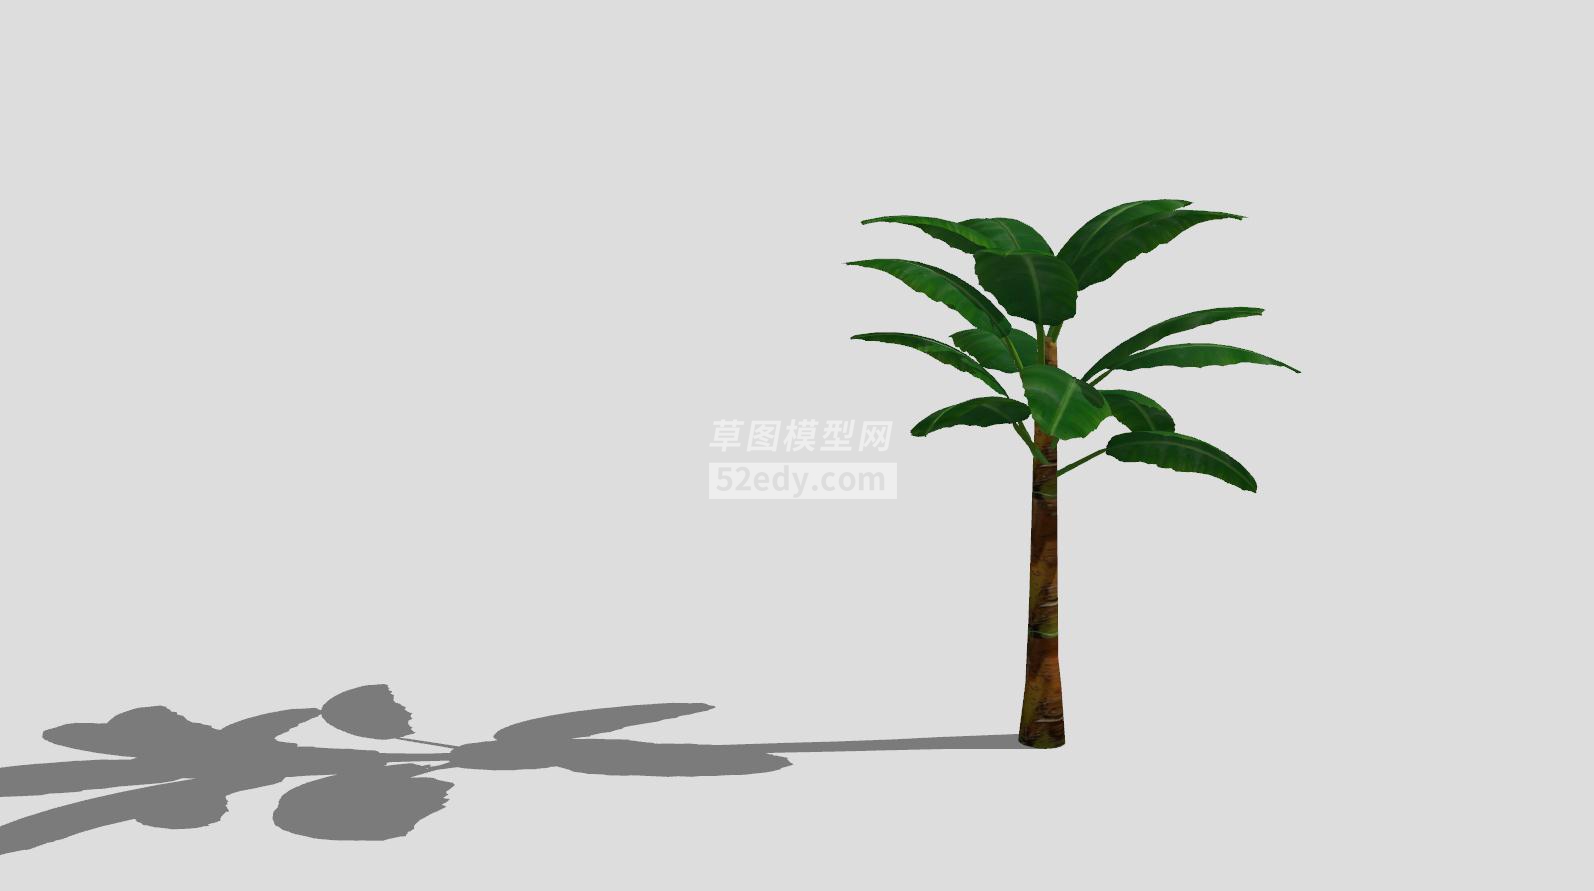 草本植物芭蕉树SU模型QQ浏览器截图20190605091942(1)